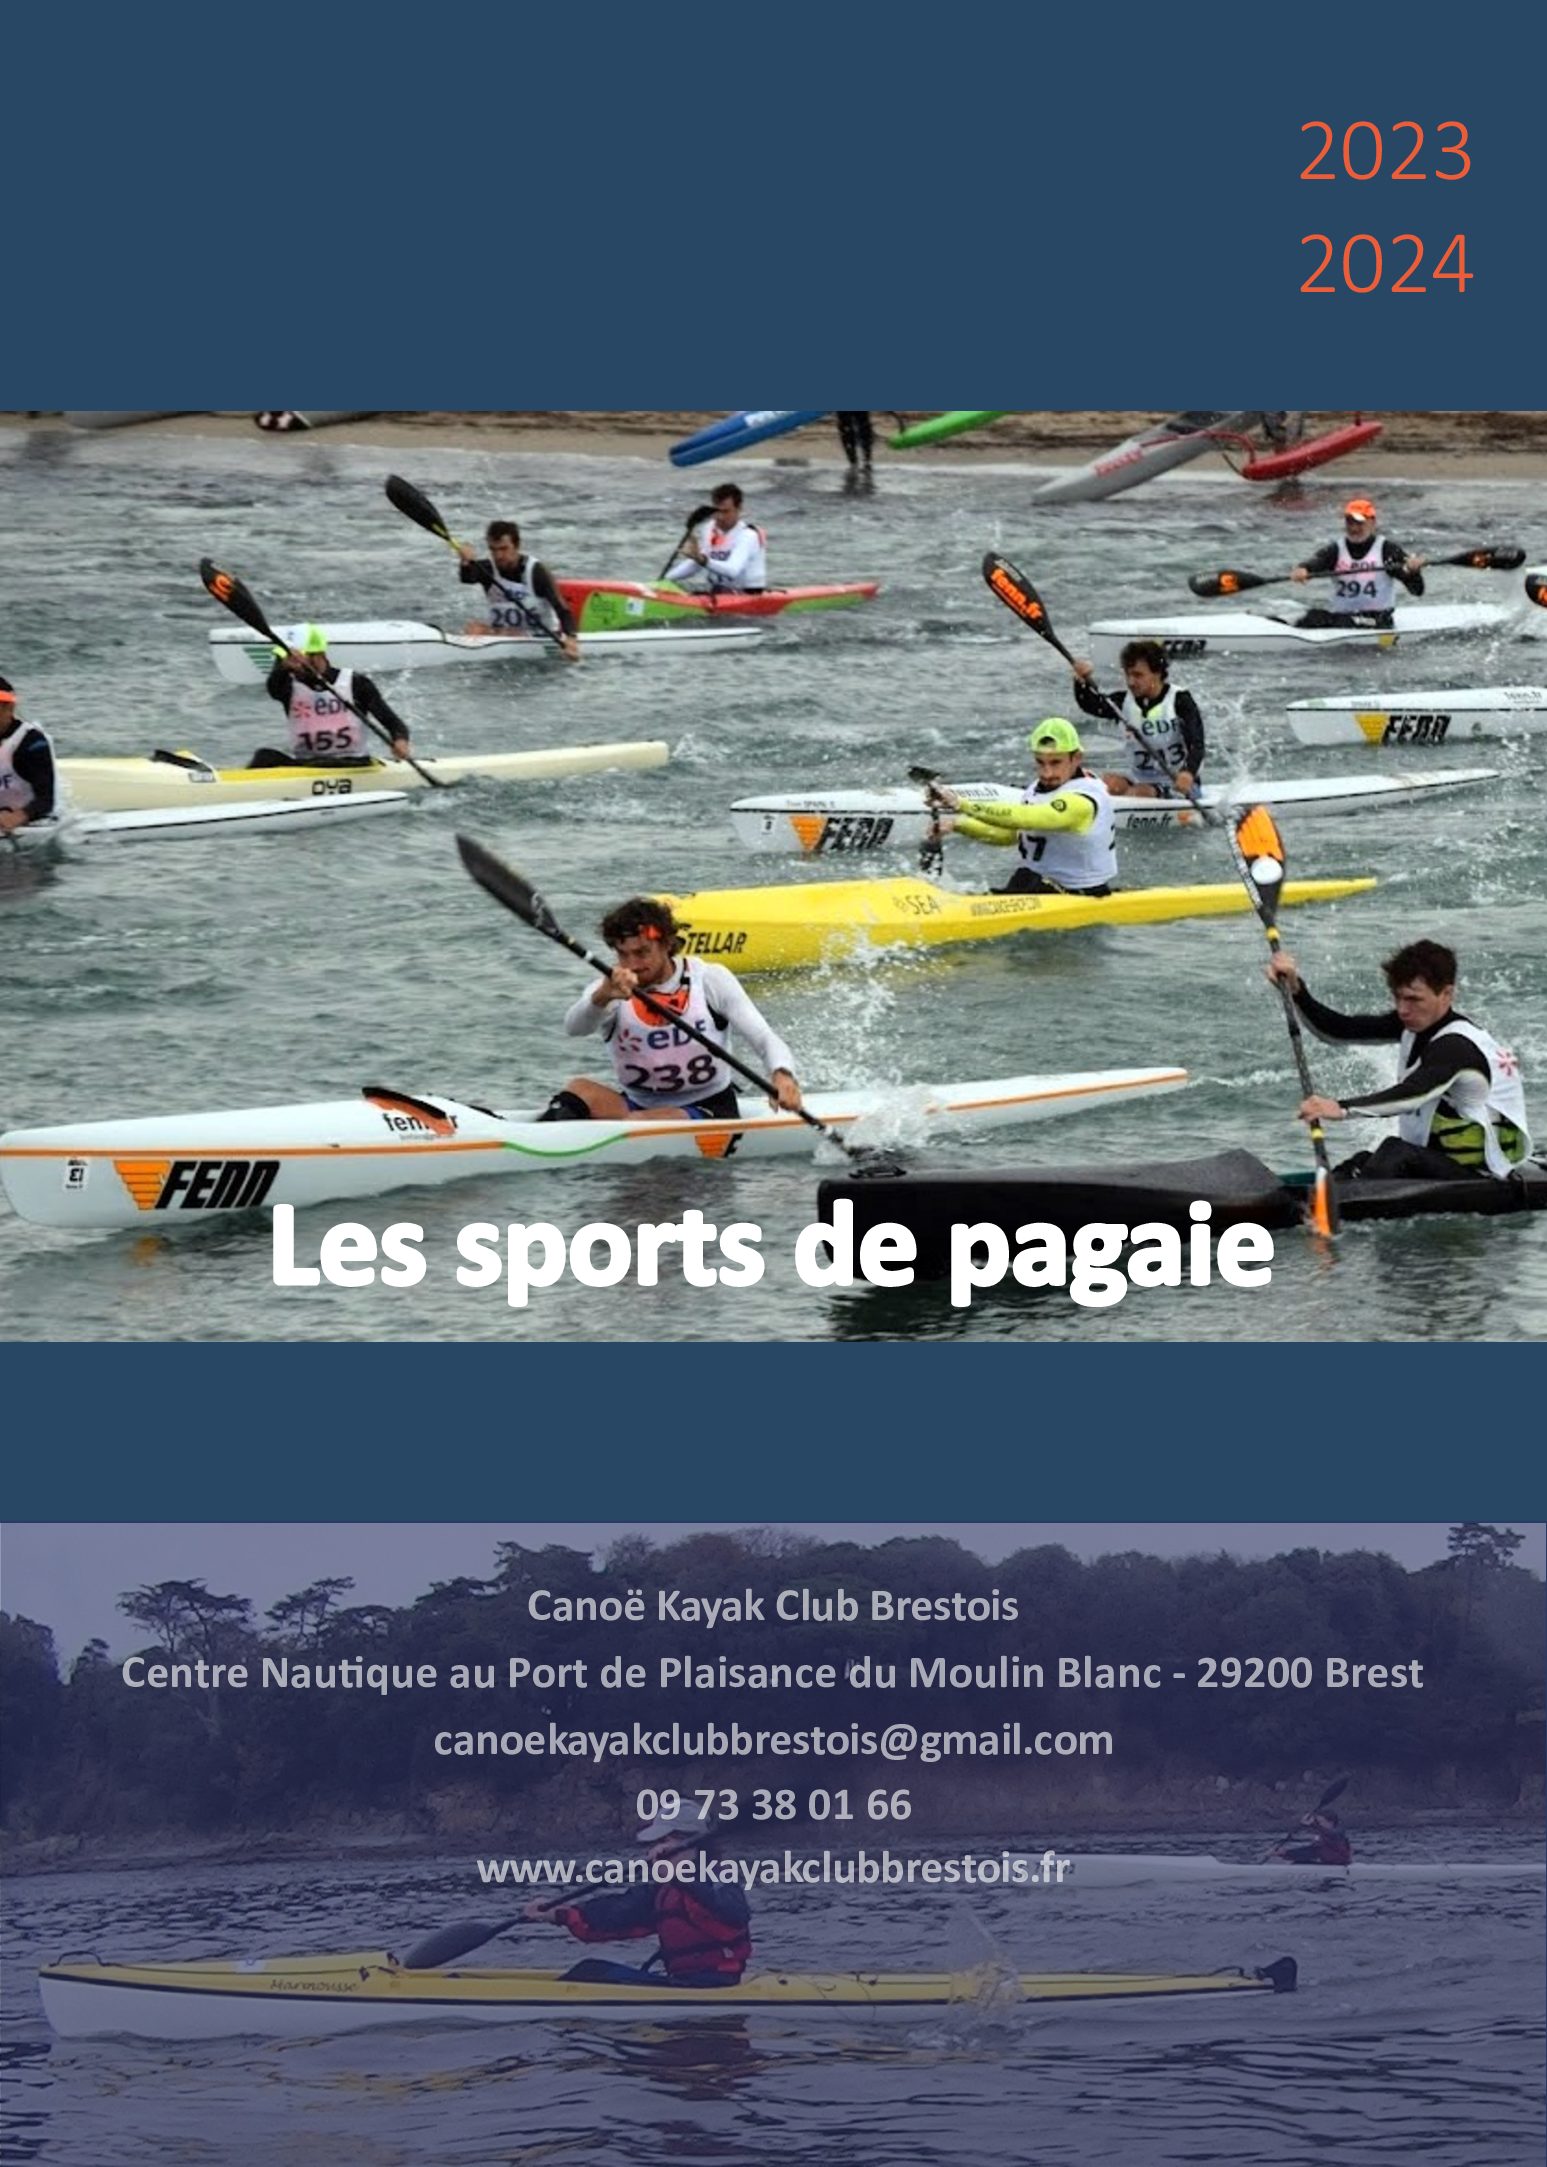 Portes ouvertes au Canoë Kayak Club Brestois – 2 et 9 septembre 2023 – 10h00 à 18h00